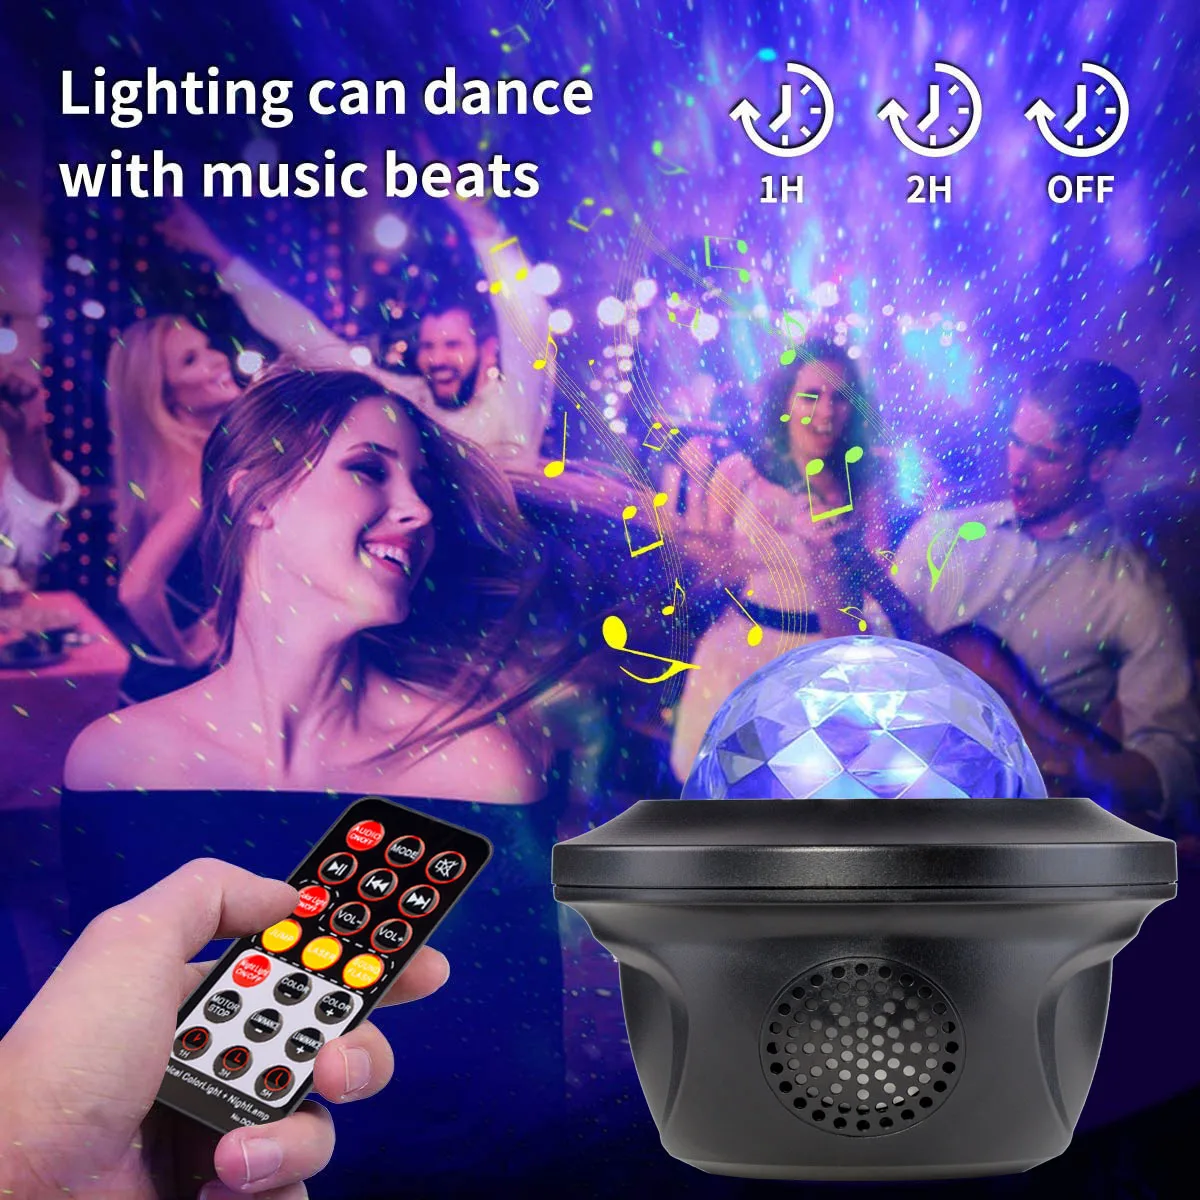 Gwiaździste Niebo Galaktyka Projektor Światło Bluetooth-kompatybilny Kontrola Odtwarzacz Muzyczny LED Night Light USB Ładowanie Lampa Prezent